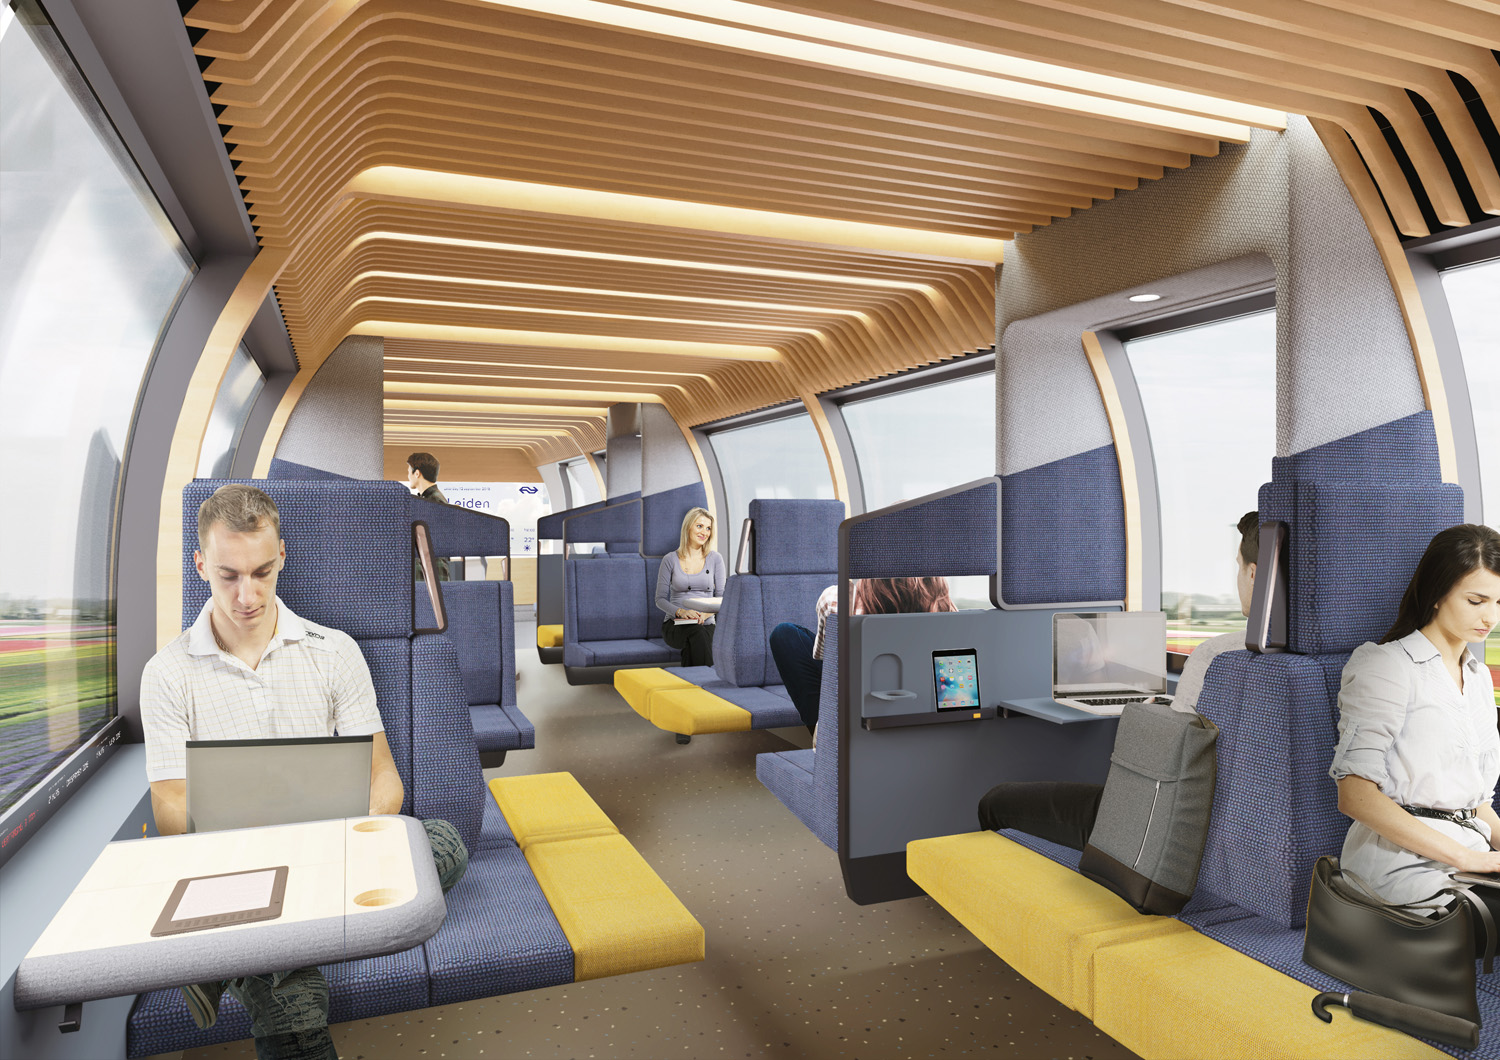 荷兰国家铁路公司列车概念图，由Mecanoo和Gispen设计